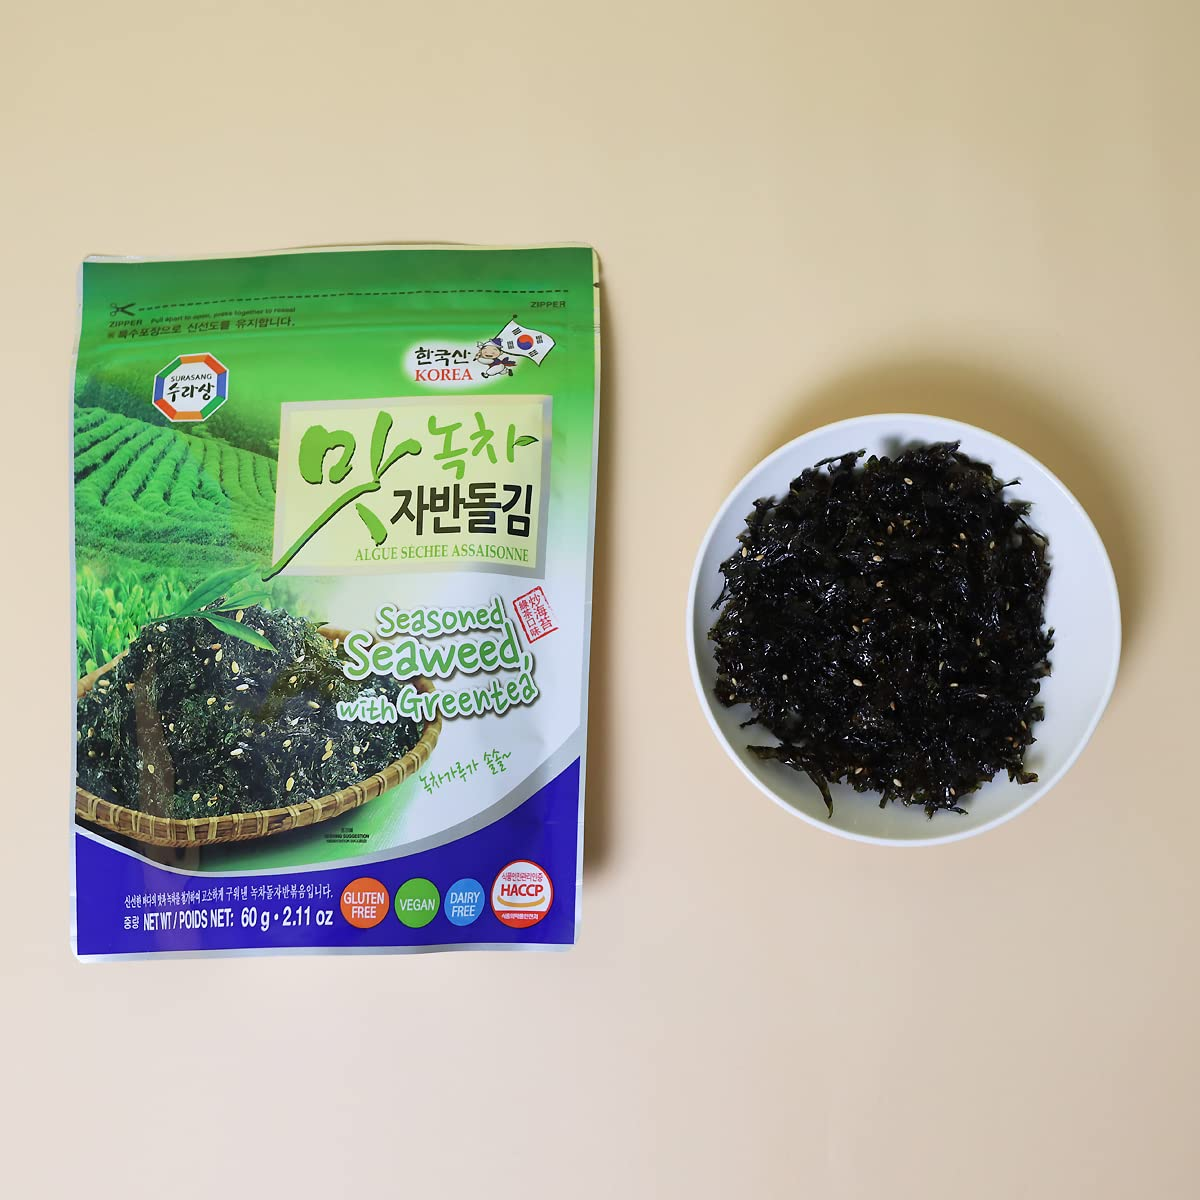 Surasang Seasoned Seaweed With Greentea 60g